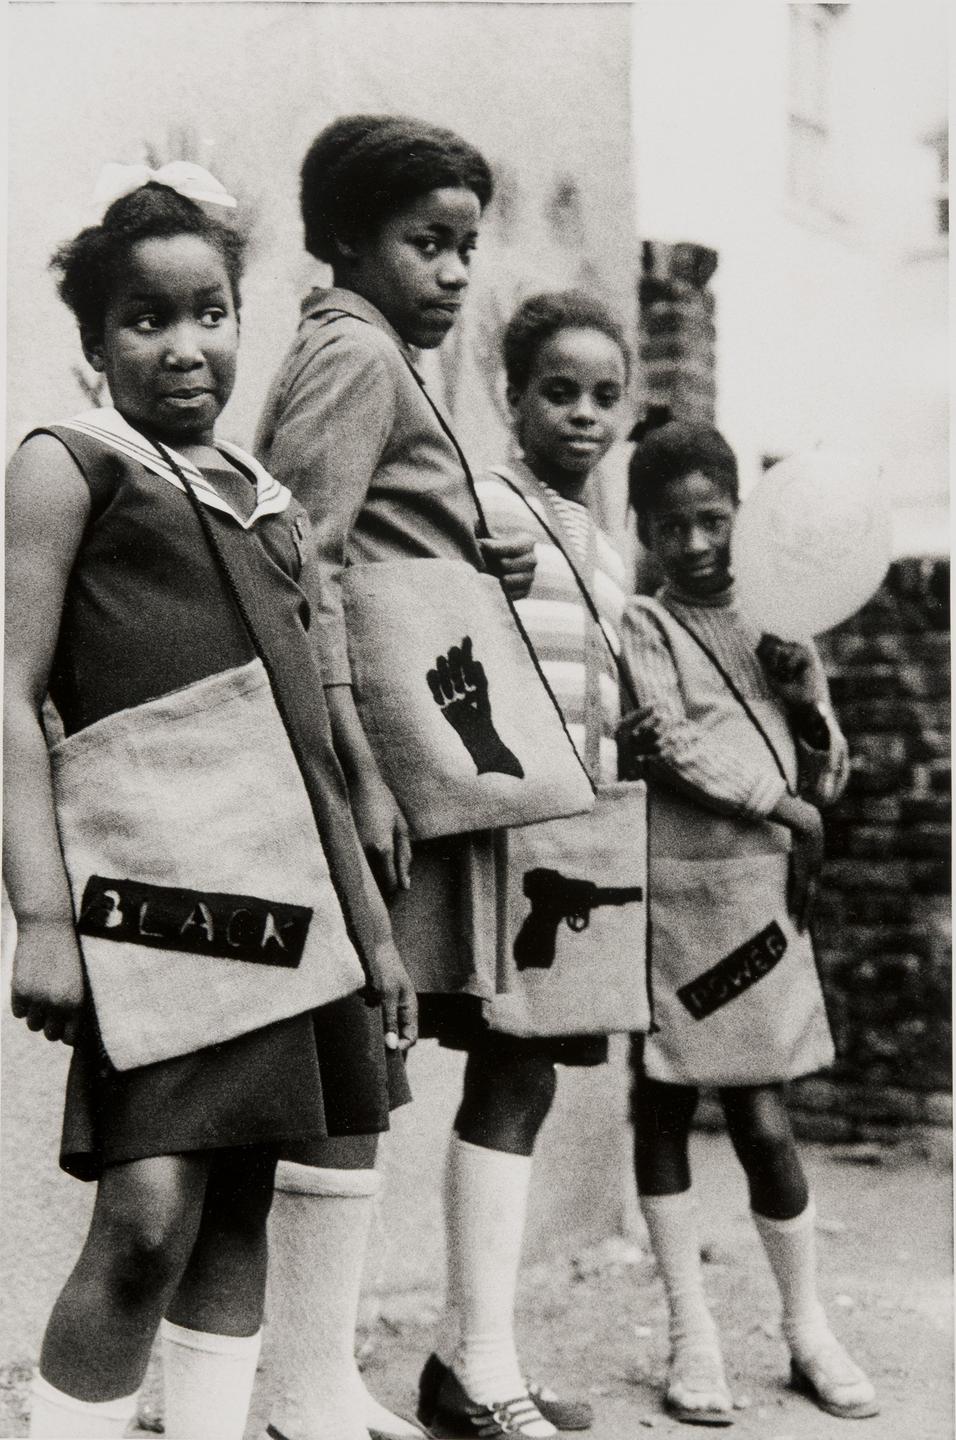 Eine Fotografie zeigt eine Gruppe junger Mädchen mit dem Symbol der Bewegung "Black Panther" auf ihren Schultaschen 1970.